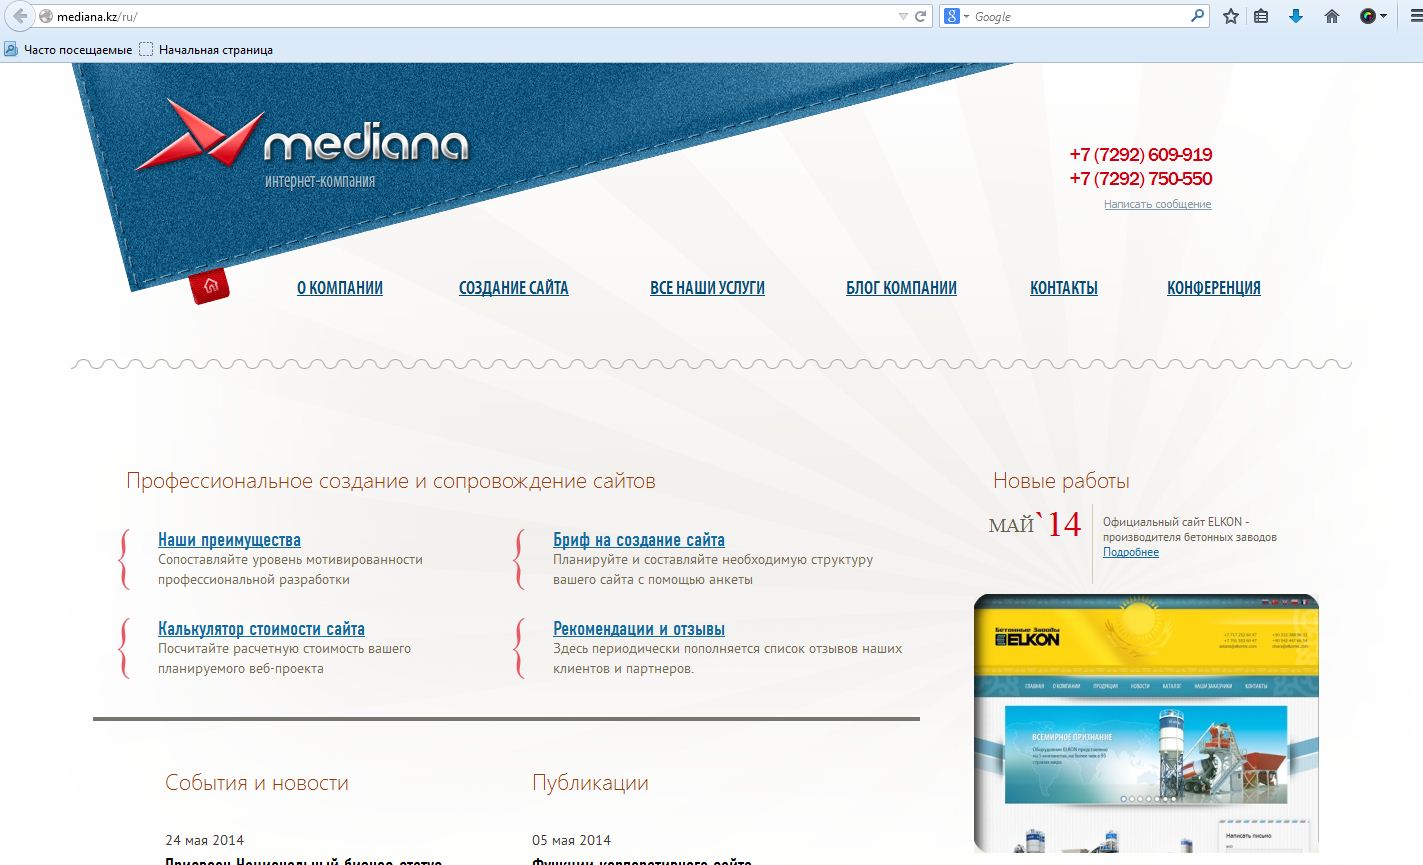 Интернет-компания Mediana.kz